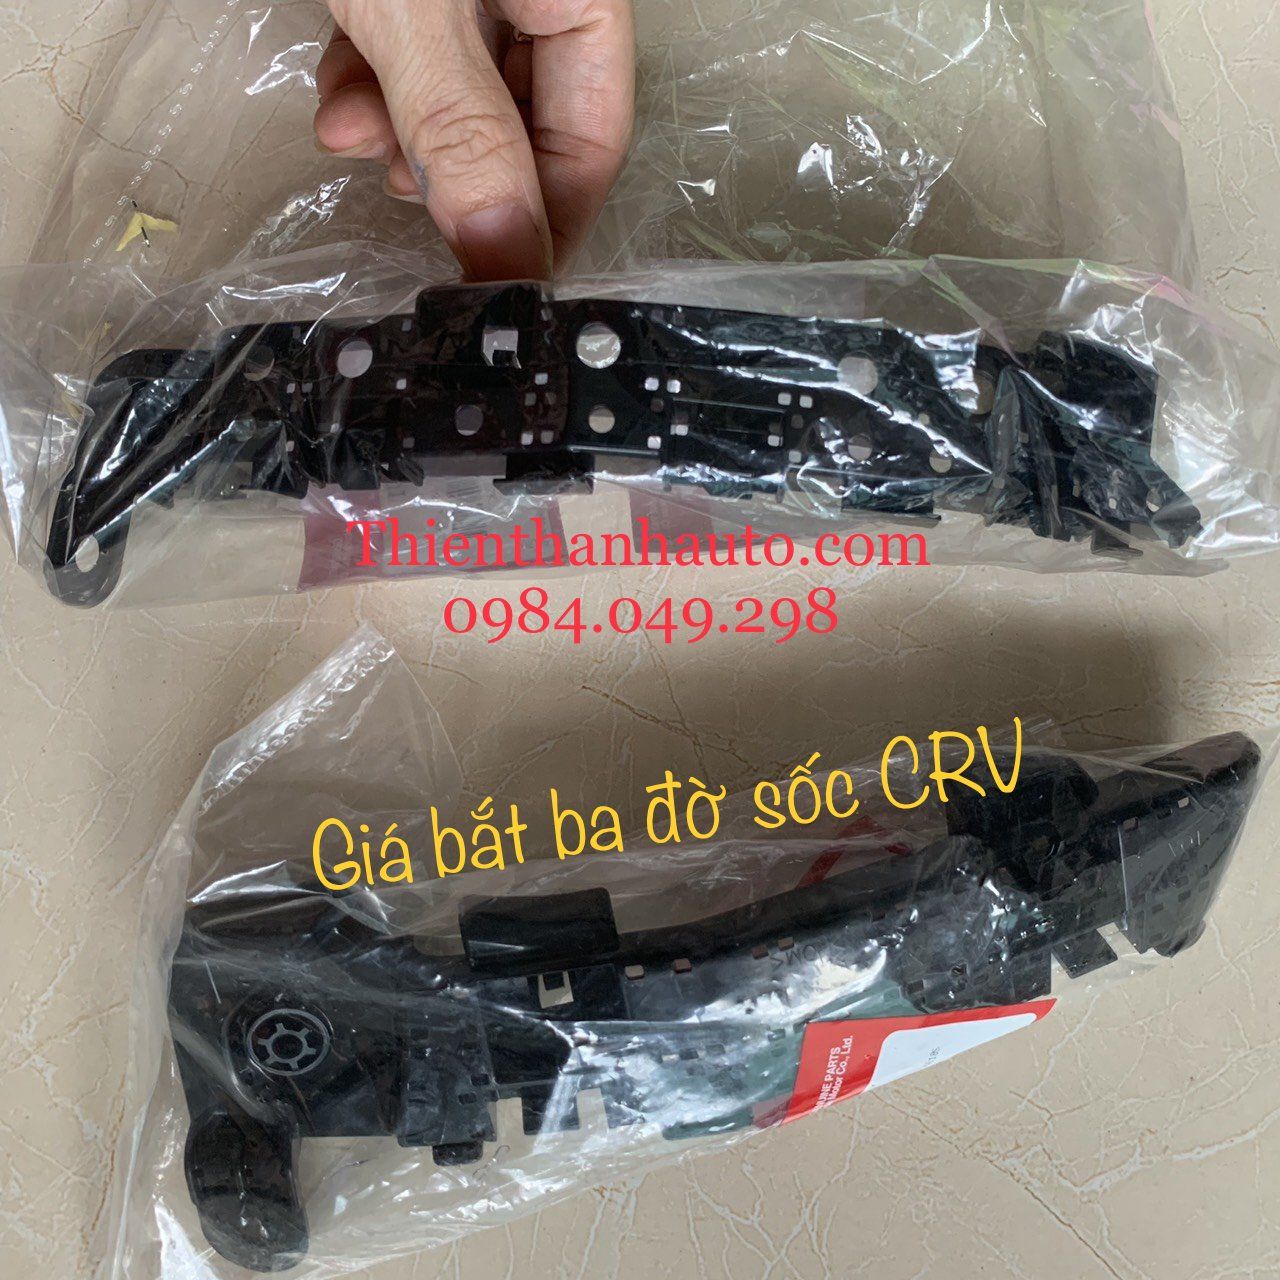 Giá bắt ba đờ sốc trước Honda CRV chính hãng - 71198TMET01 - Thienthanhauto.com